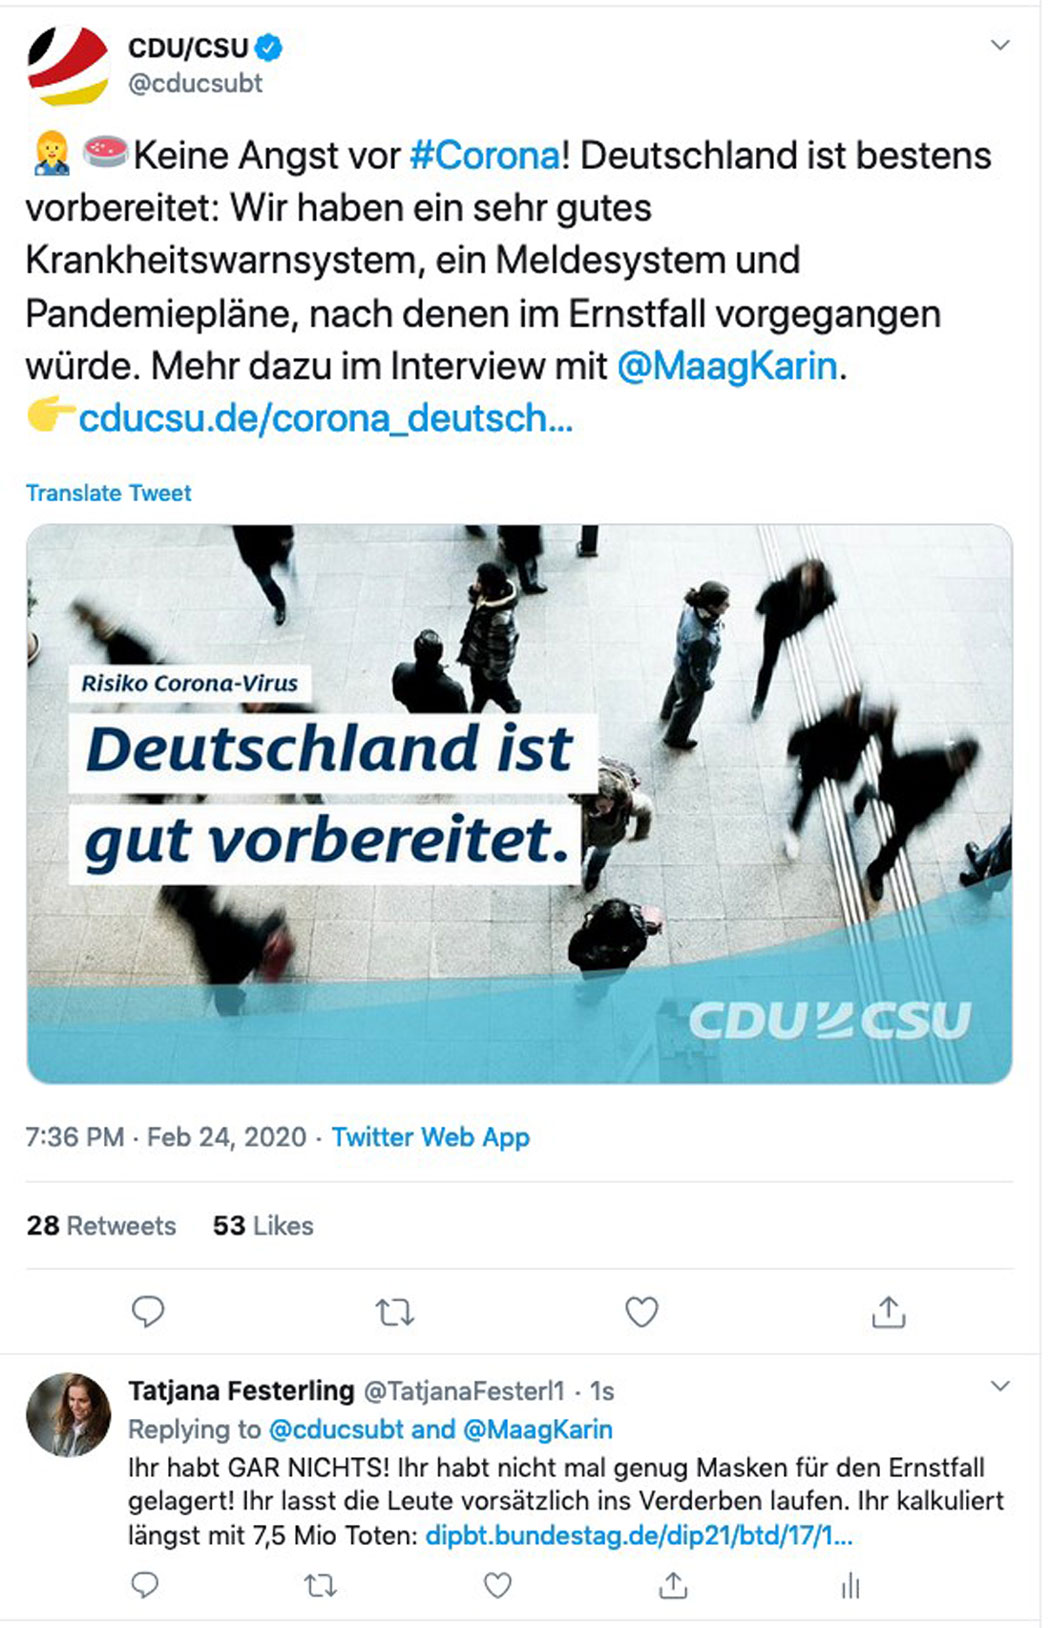 Die CDU/CSU verhöhnt und verspottet die Deutschen!